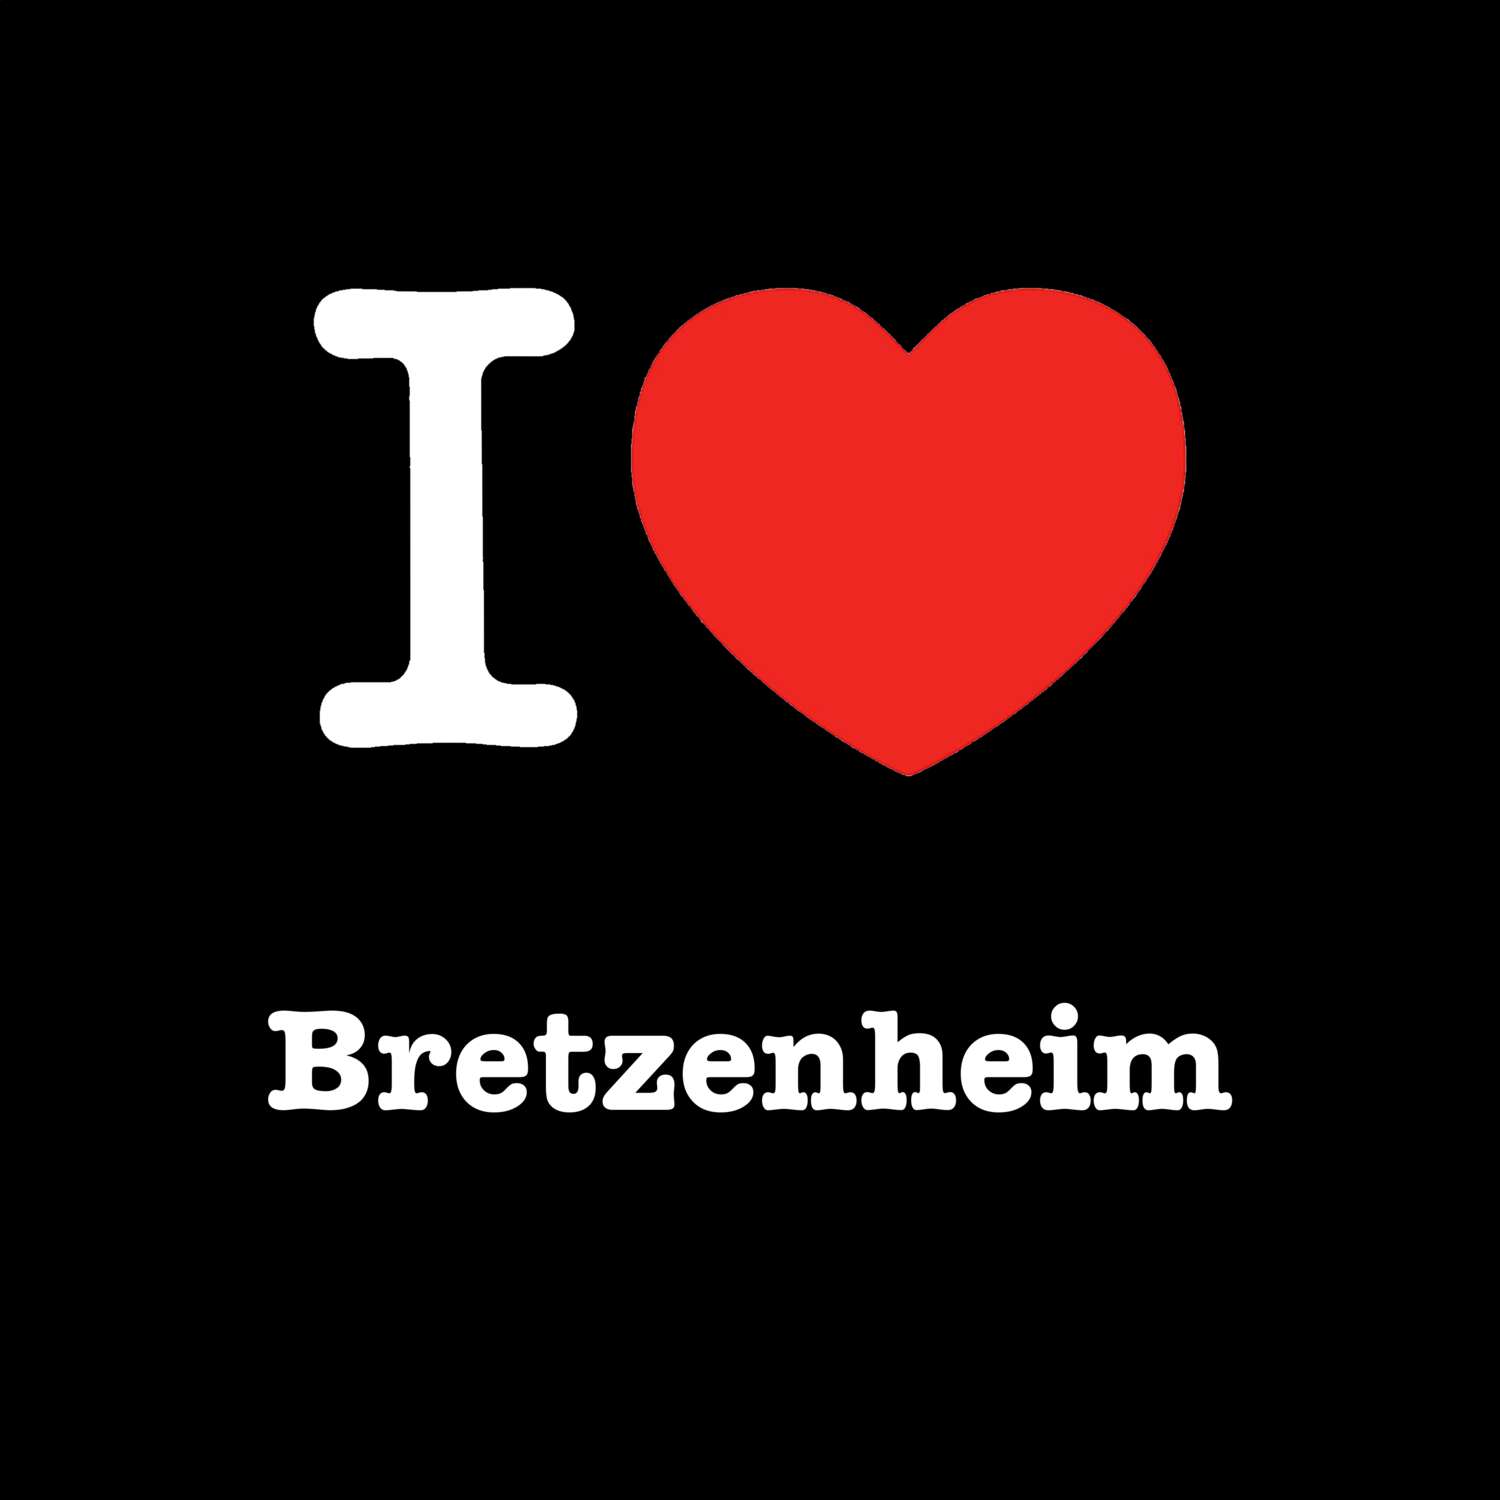 Bretzenheim T-Shirt »I love«